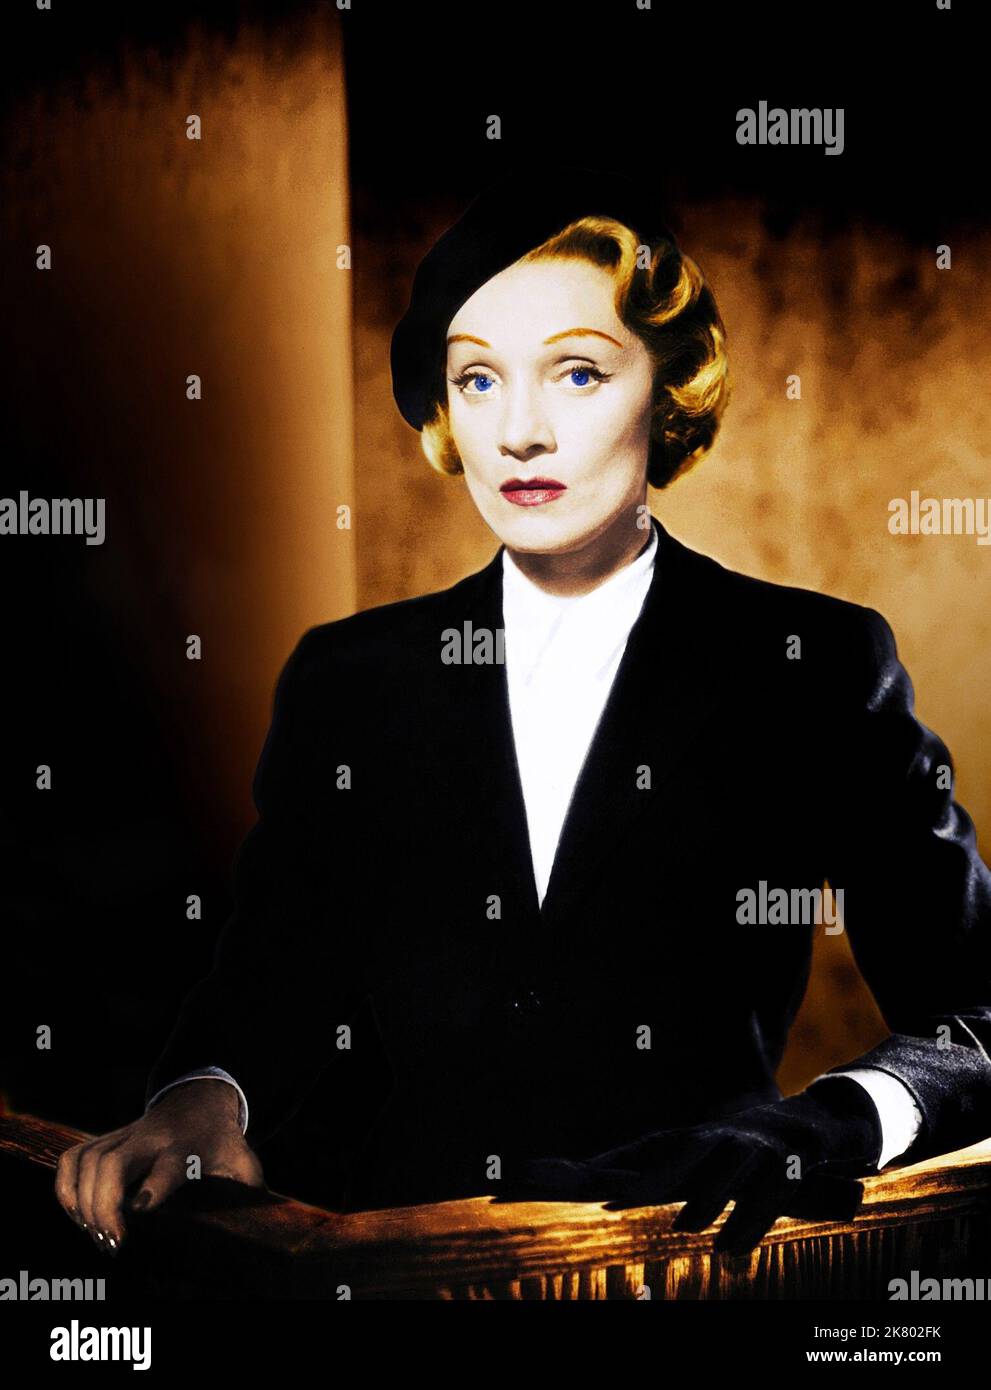 Marlene Dietrich Film: Testimone per l'accusa (USA 1957) personaggi: Christine Vole regista: Billy Wilder 17 dicembre 1957 **AVVERTENZA** questa fotografia è solo per uso editoriale ed è copyright di MGM e/o del fotografo assegnato dalla Film o dalla Production Company e può essere riprodotta solo da pubblicazioni in concomitanza con la promozione del film di cui sopra. È richiesto un credito obbligatorio a MGM. Il fotografo deve essere accreditato anche quando è noto. Nessun uso commerciale può essere concesso senza autorizzazione scritta da parte della Film Company. Foto Stock